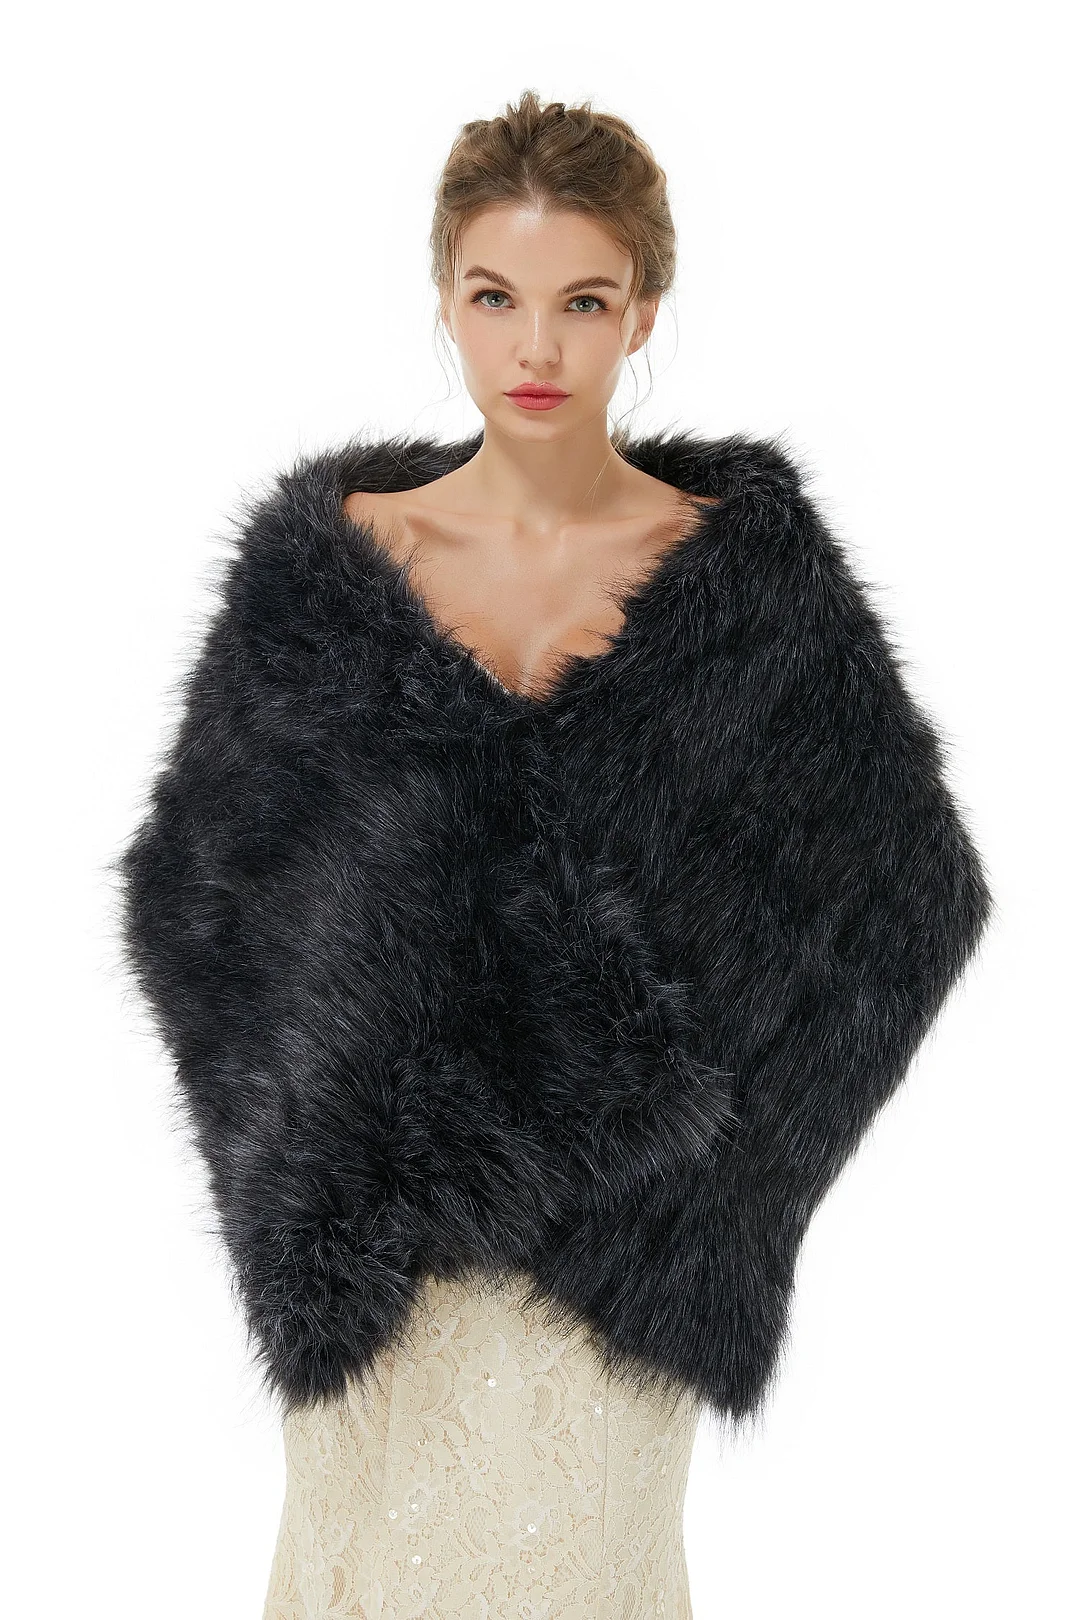 Bellasprom Fashion Black Winter Faux Fur Wedding Wrap Shawl for Brides Bellasprom